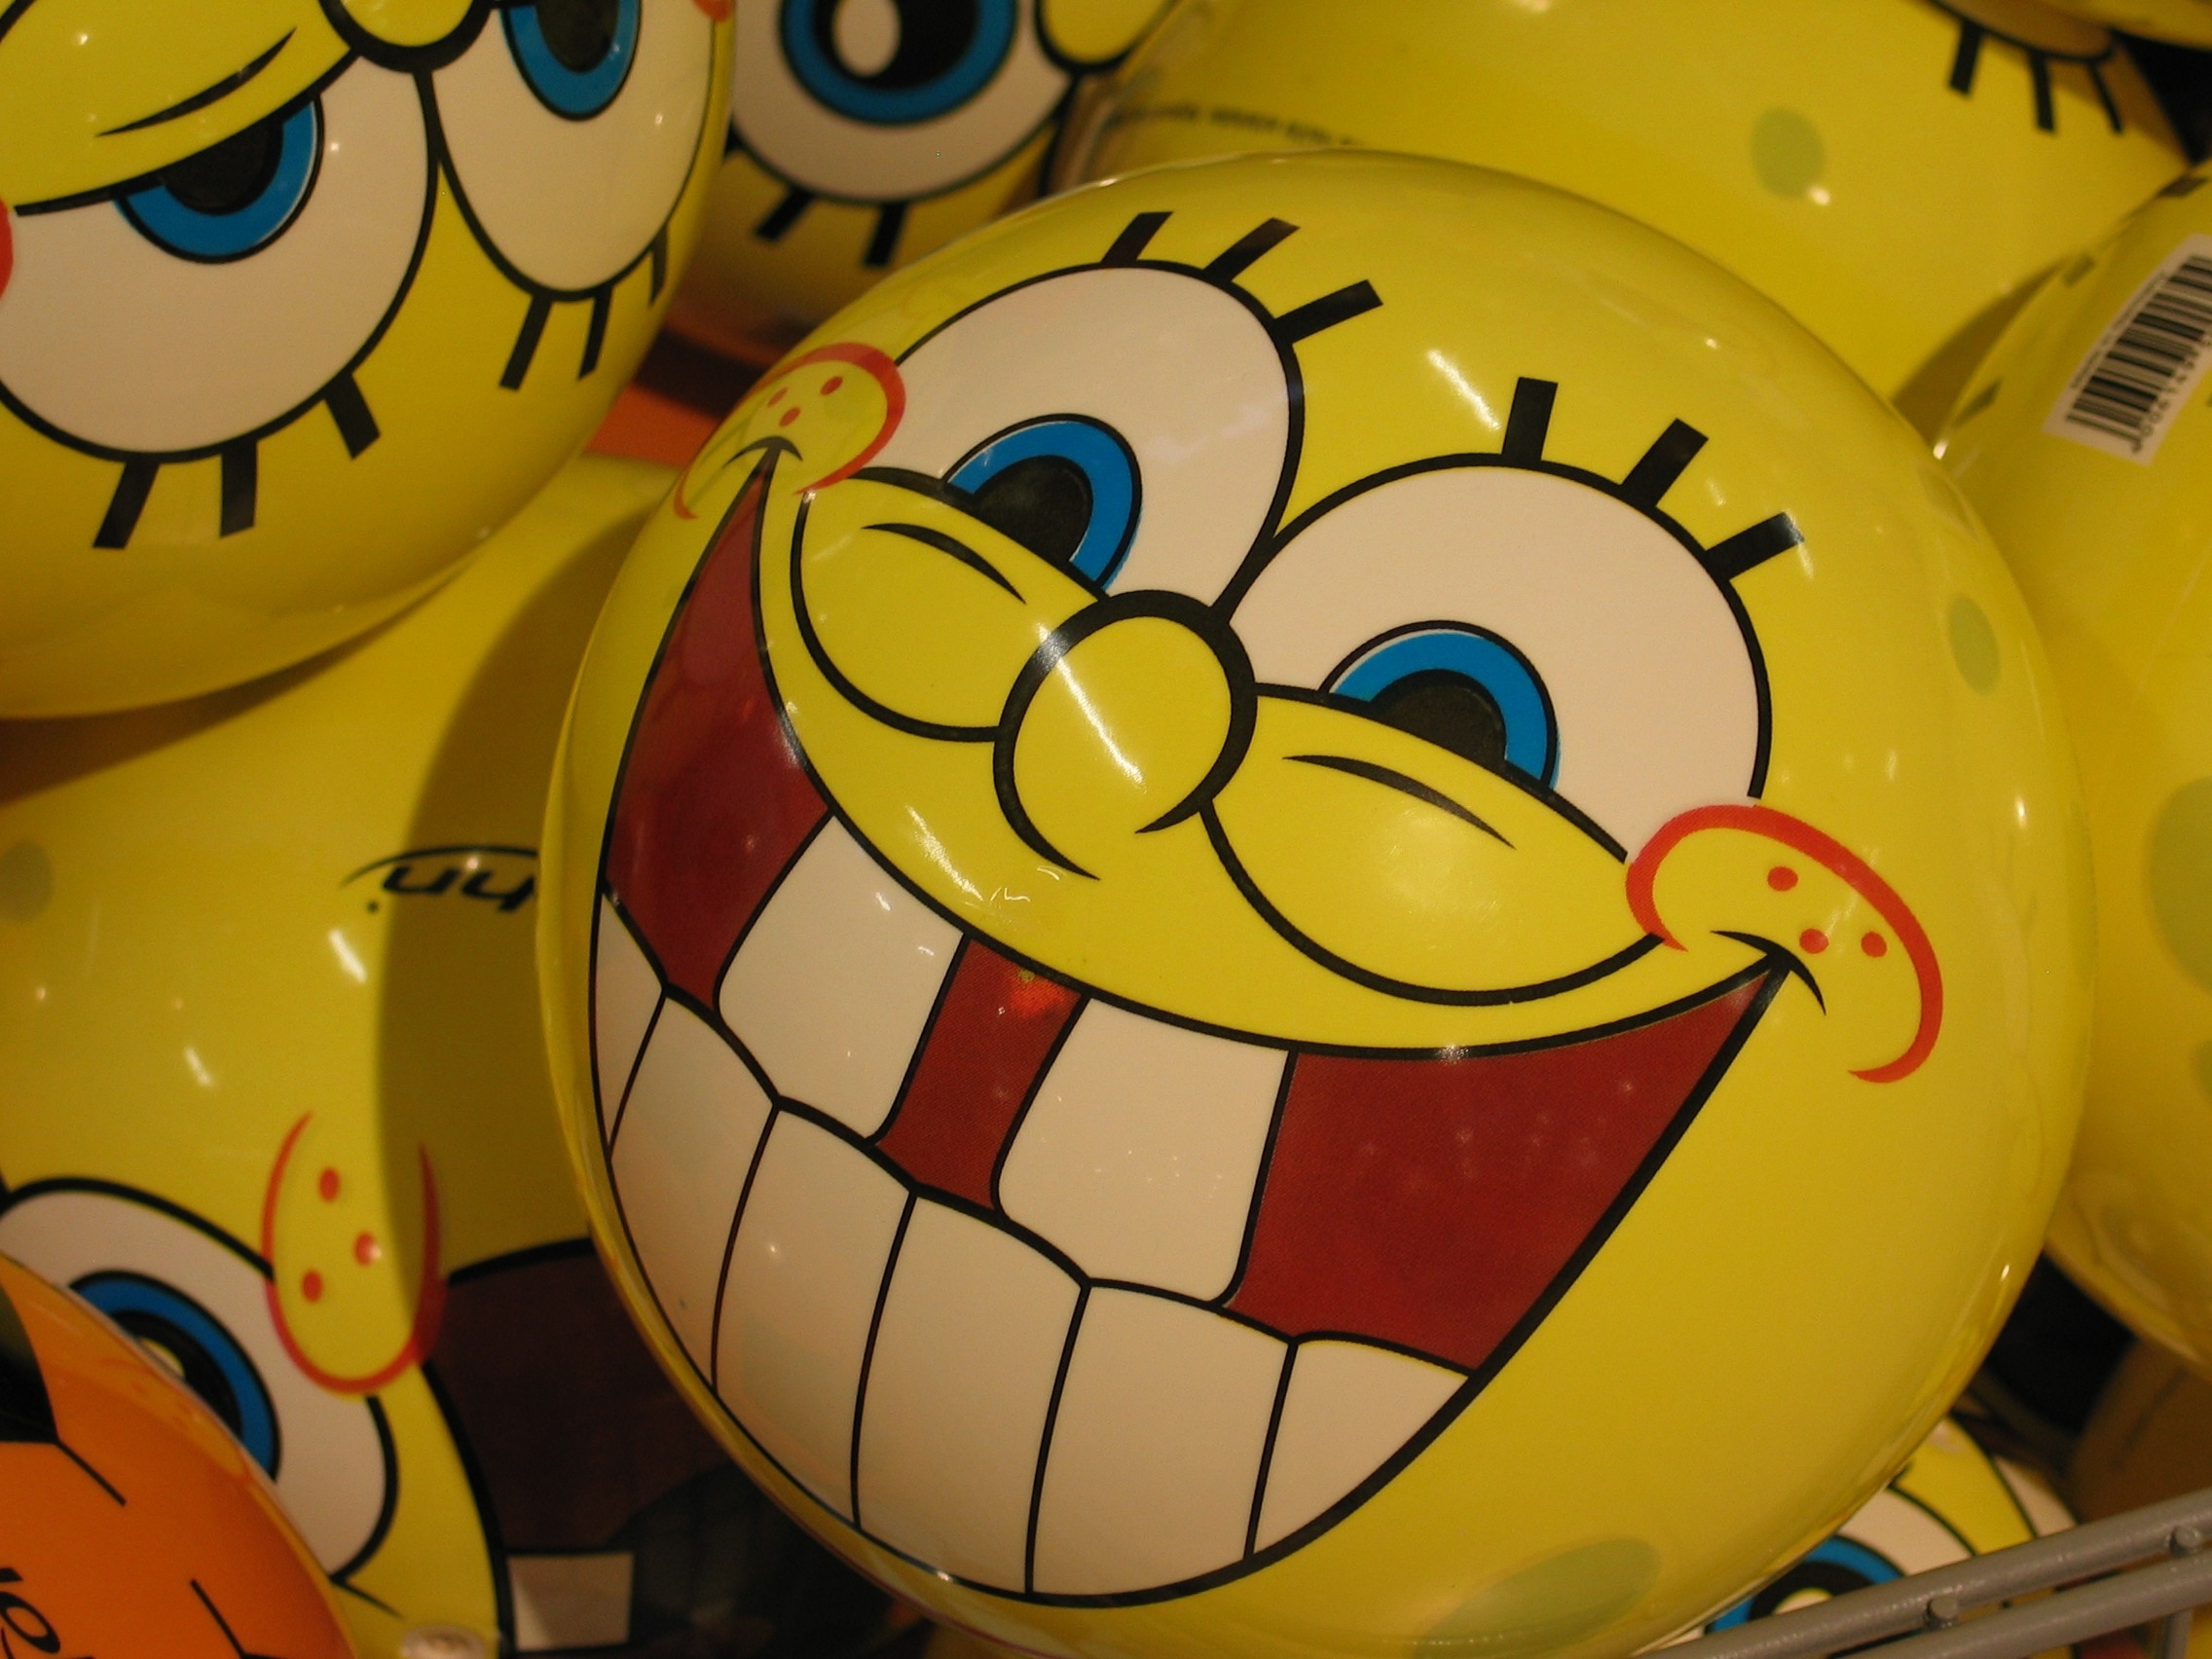 smiling emoticon toy